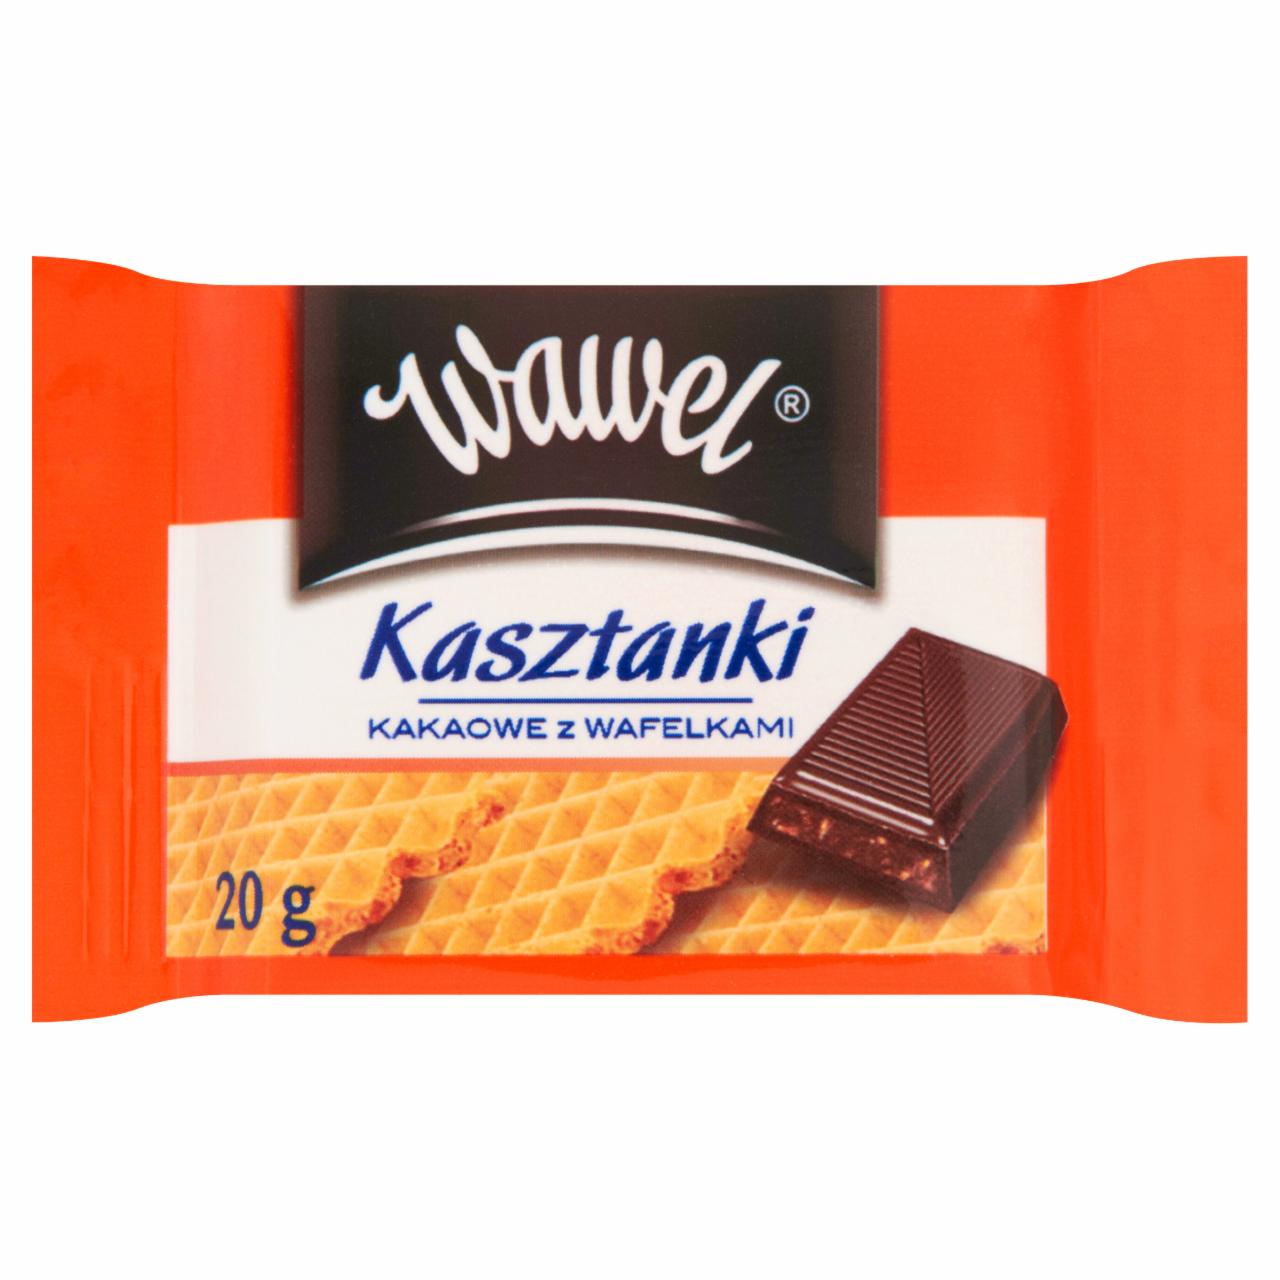 Zdjęcia - Wawel Kasztanki kakaowe z wafelkami Czekolada nadziewana 20 g